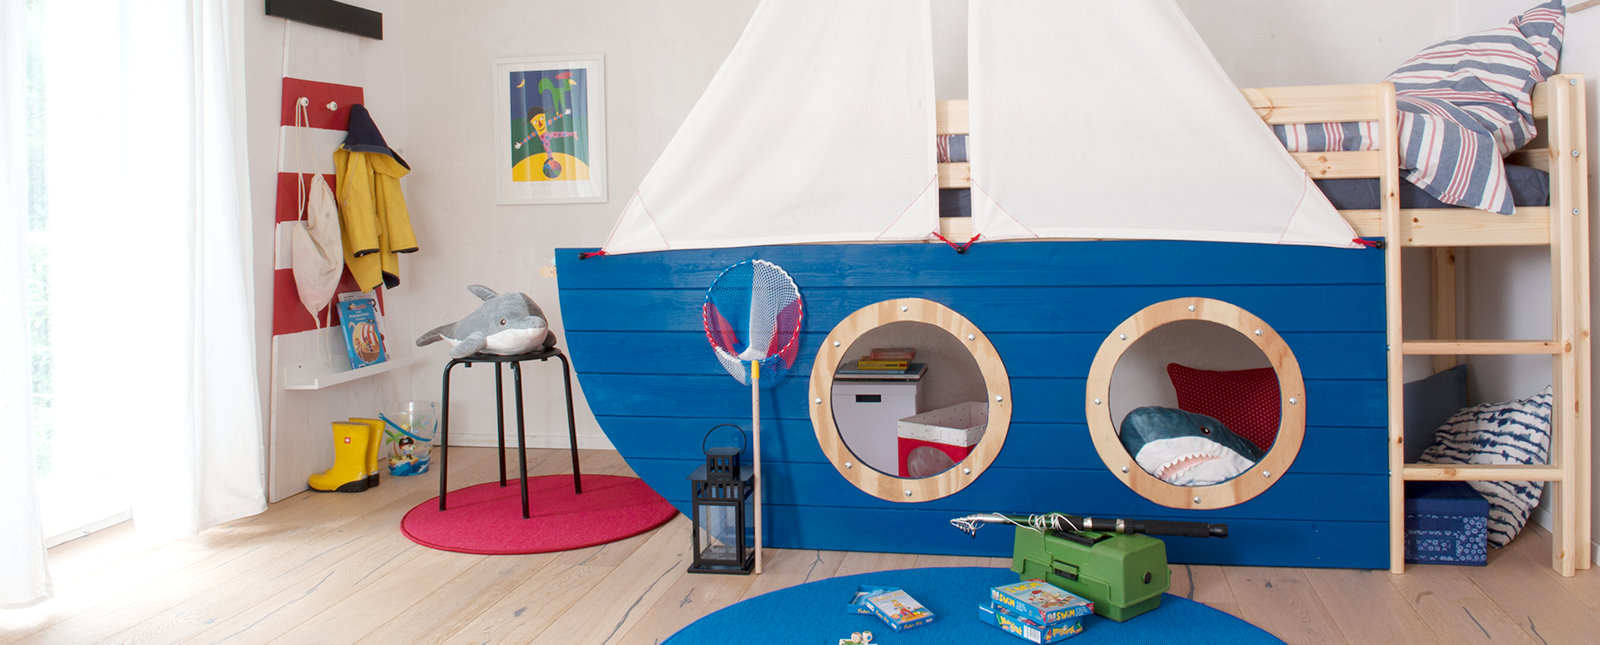 Osmo Olio Cera dura Decorativo aggiunge riflessi colorati nelle camerette dei bambini